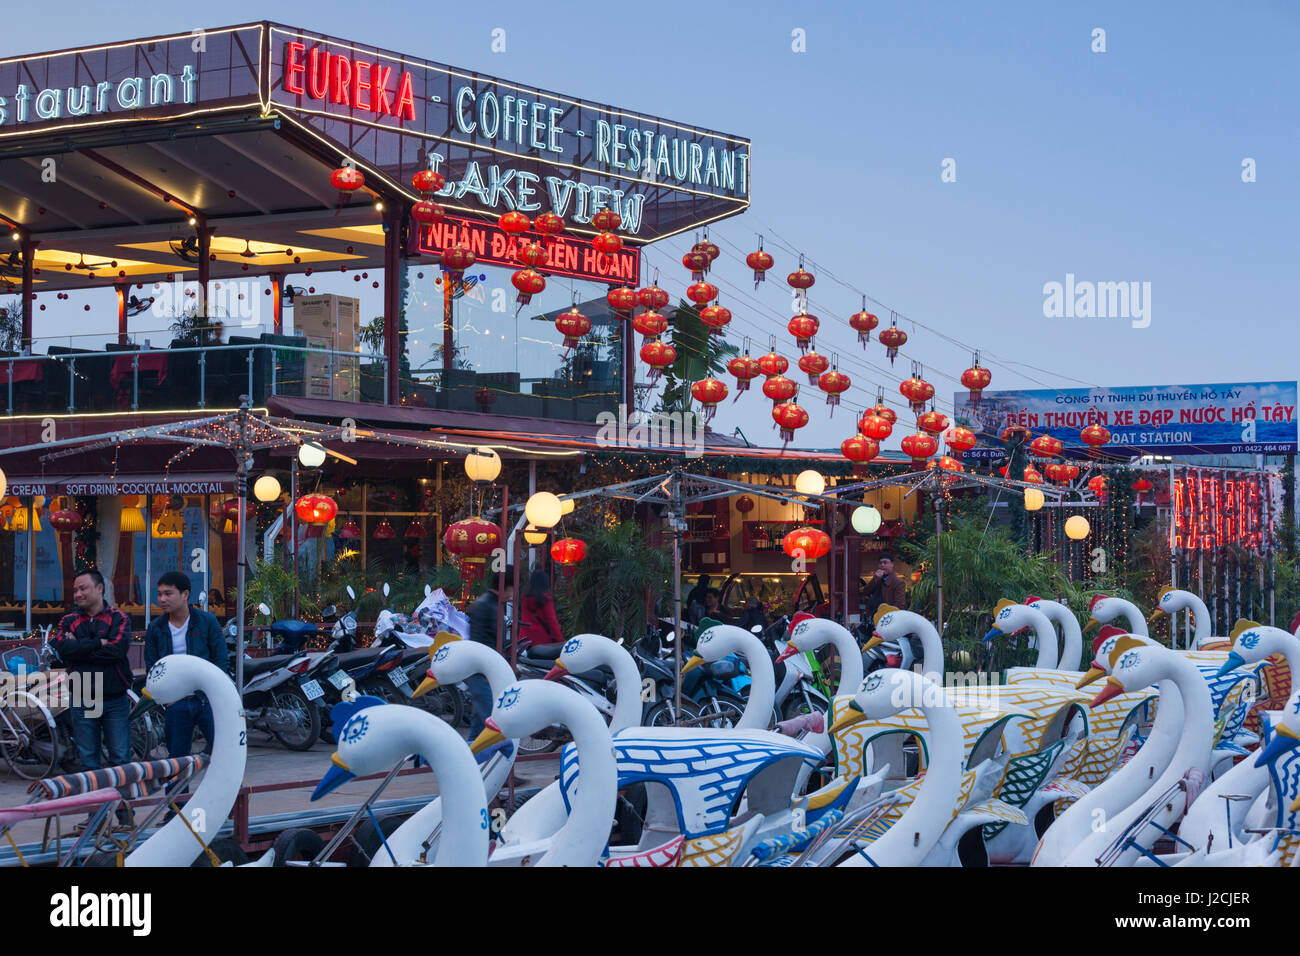 Vietnam, Hanoi. Tay Ho, West Lake, floating restaurant and swan boats, dusk Stock Photo